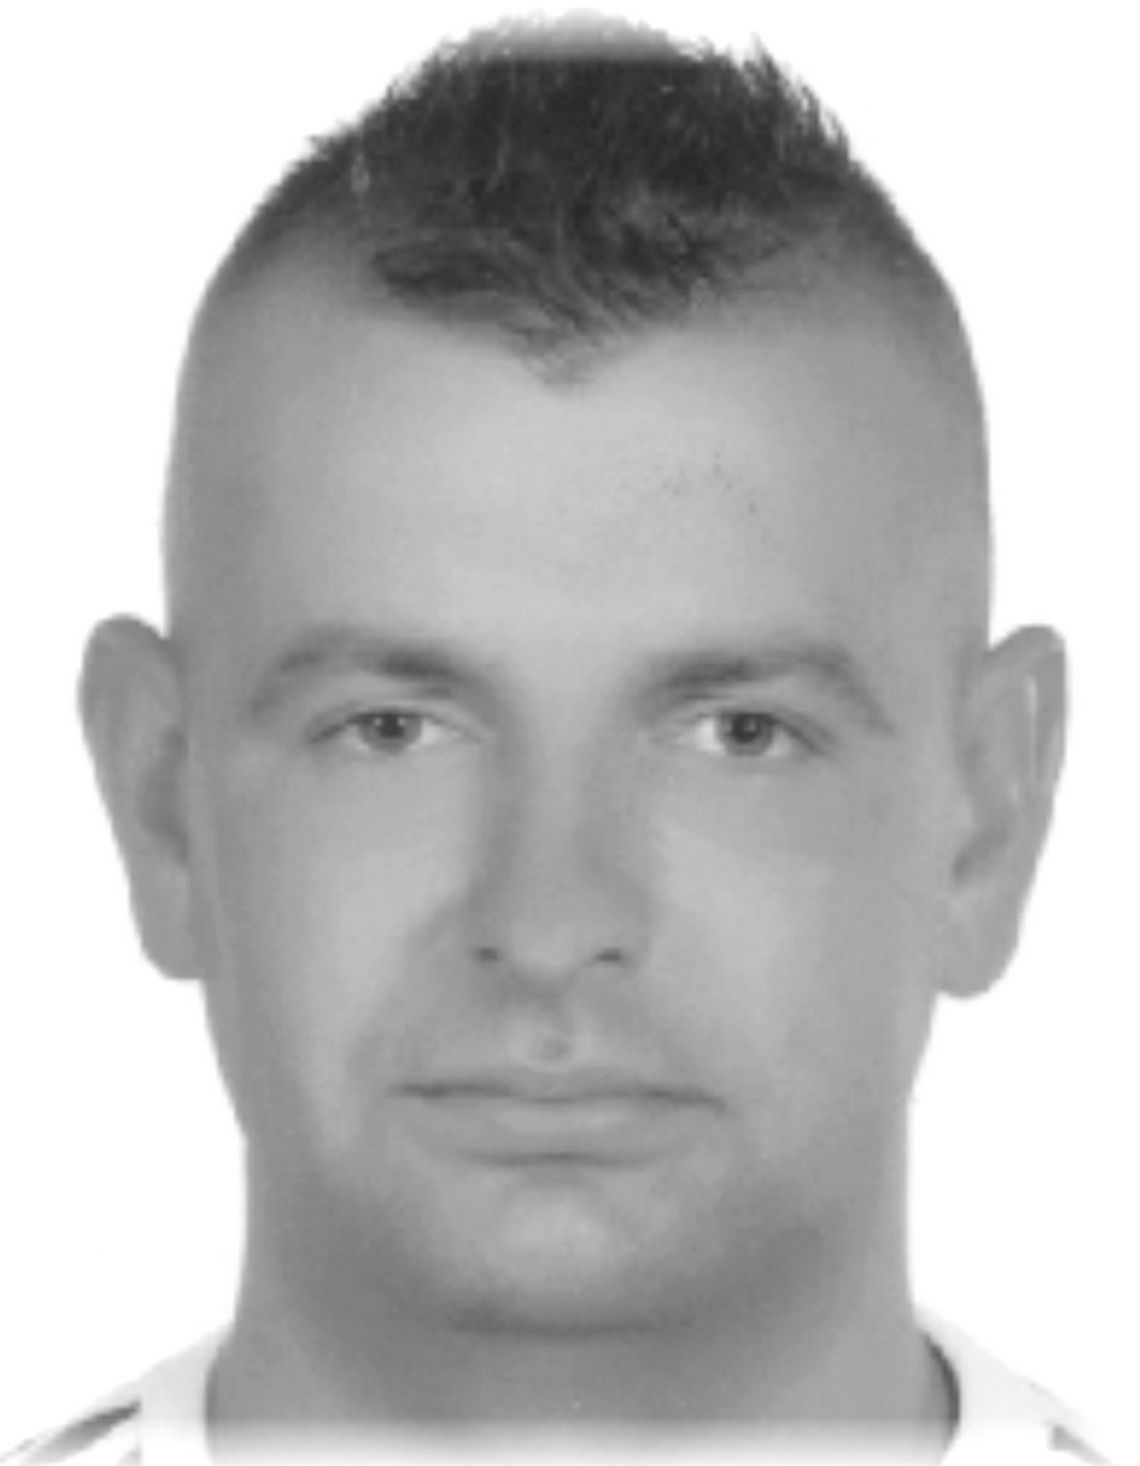 Pojechał do Tczewa i ślad po nim zaginął. Policjanci i rodzina poszukują zaginionego 35-latka